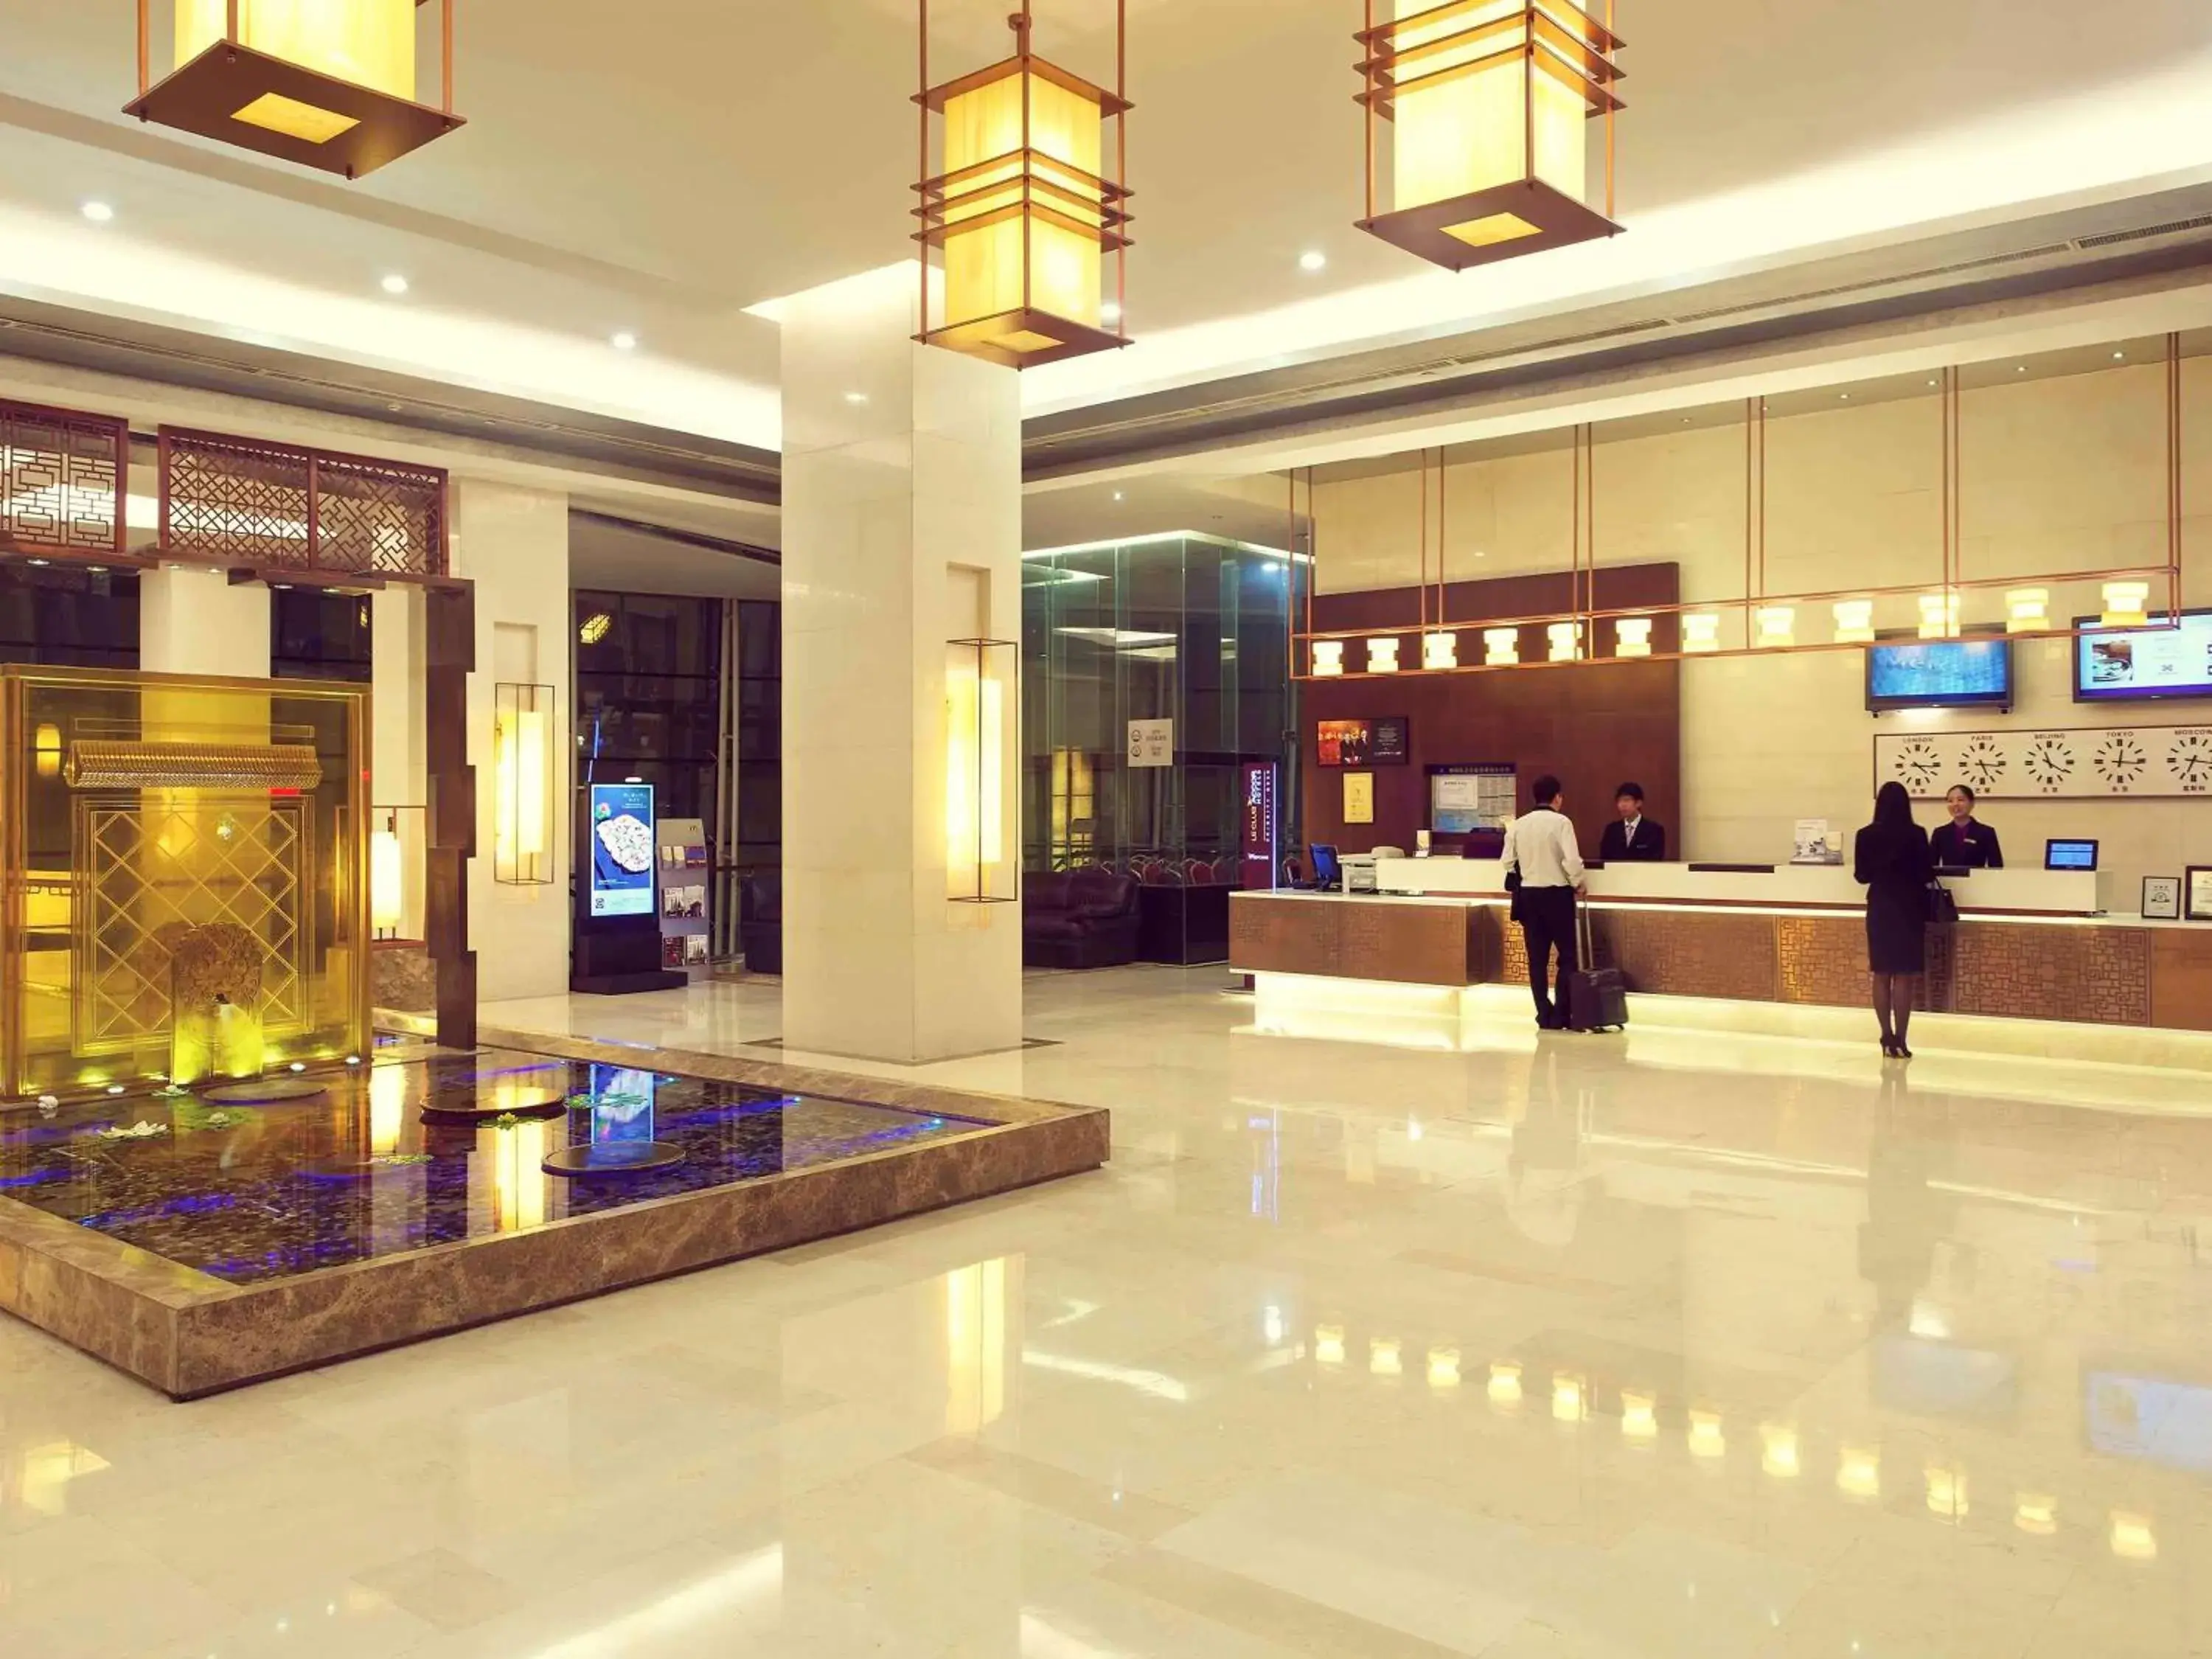 Lobby or reception in Mercure Beijing Downtown Hotel